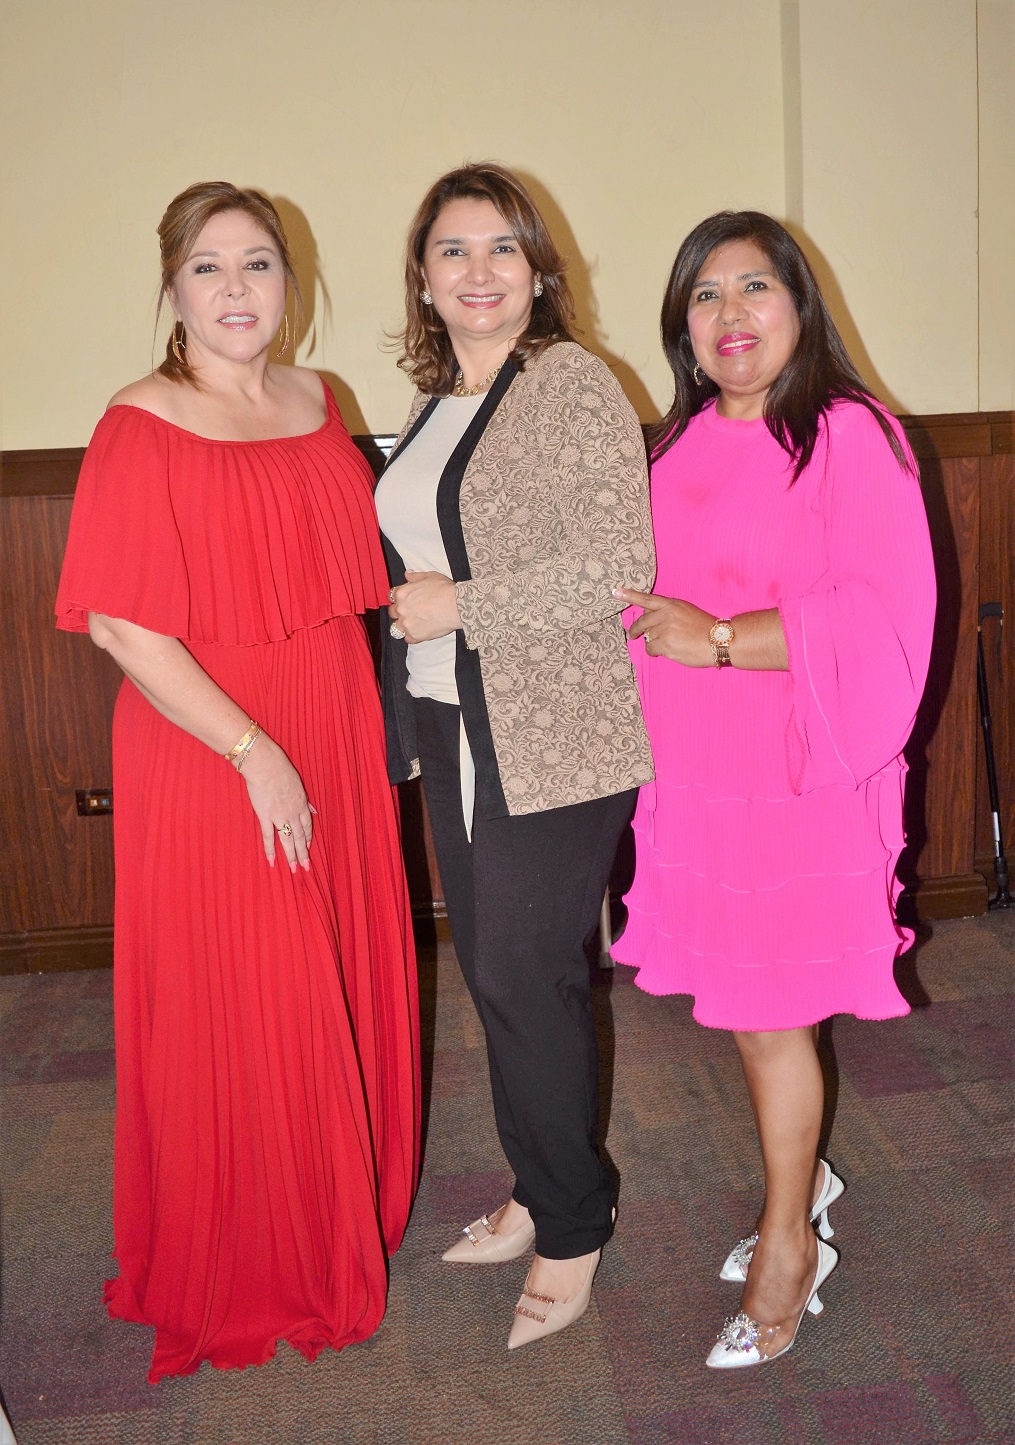 Damas del Damas del Club Internacional de Mujeres celebran Té de la Amistad 